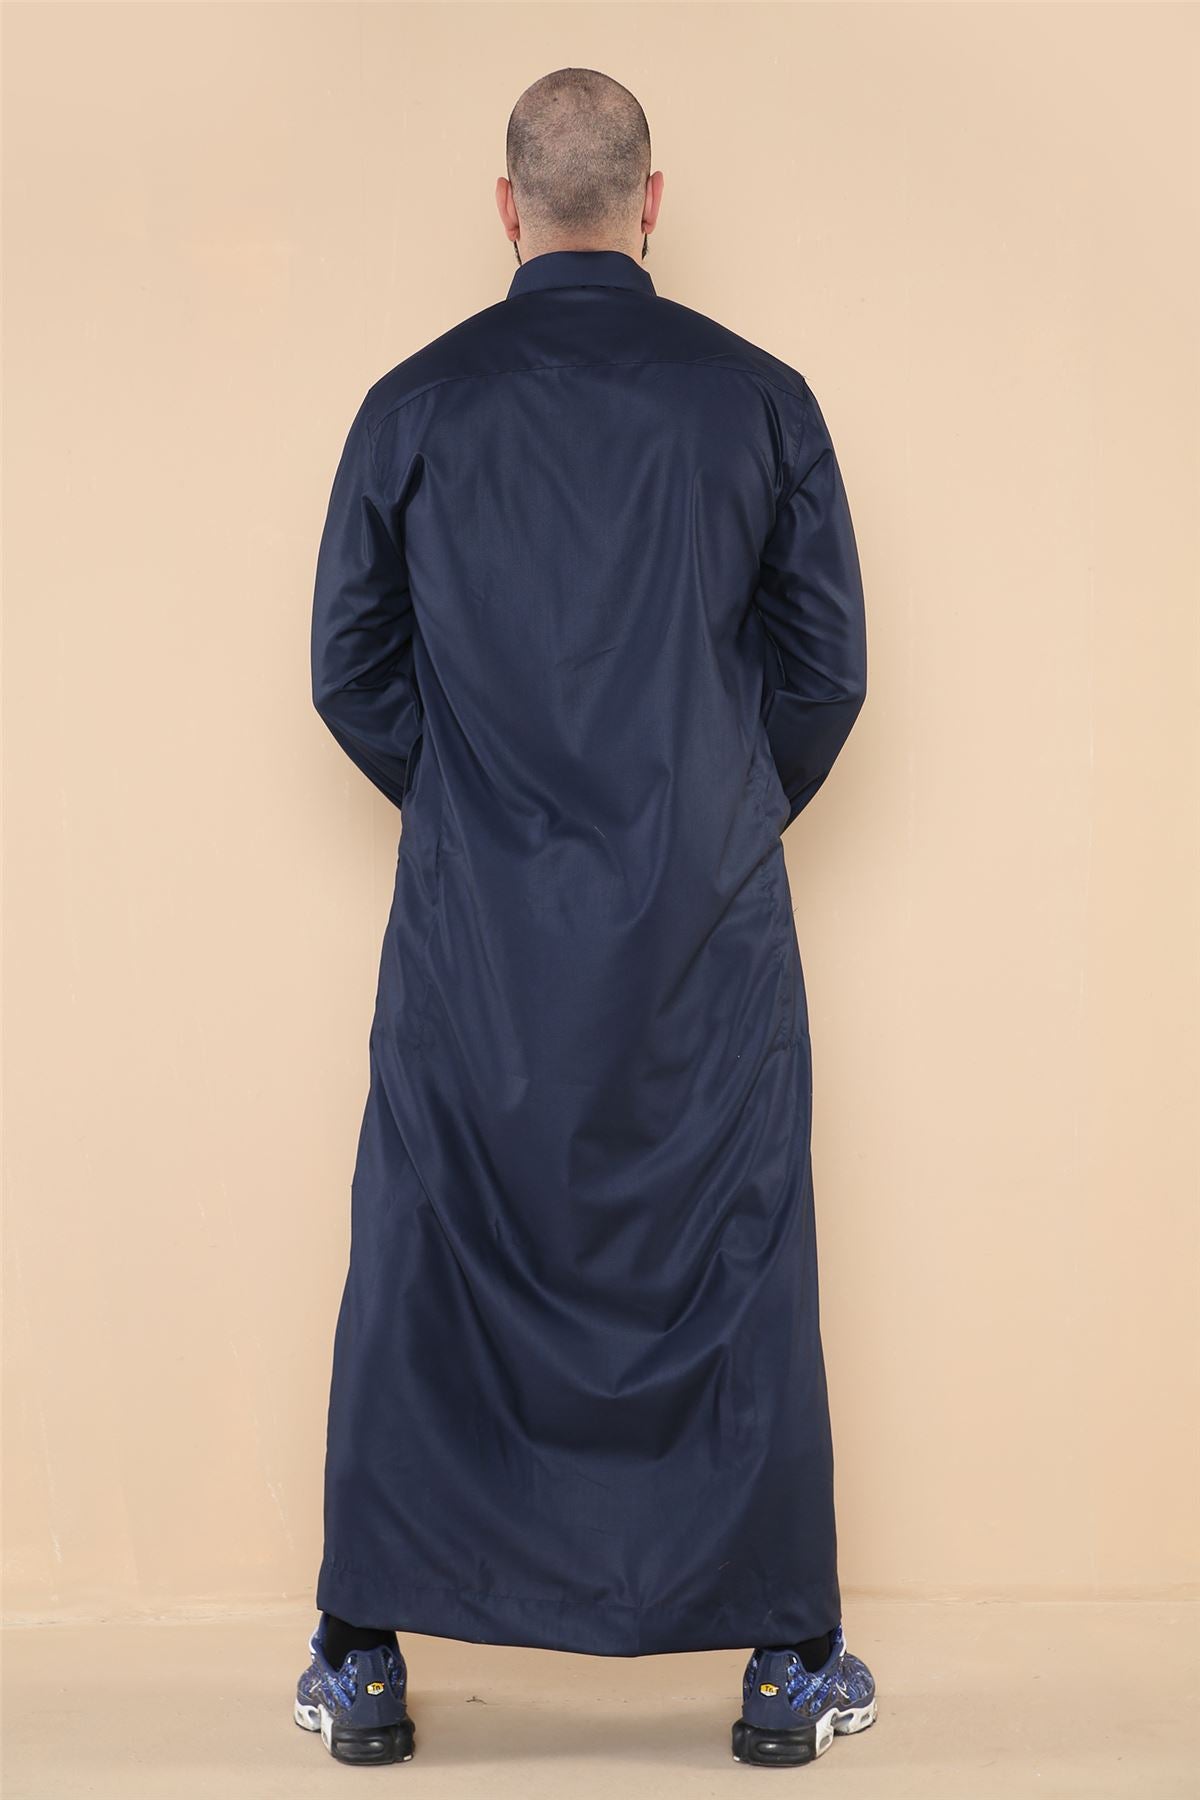 Herren Thobe Jubba Islamisch Muslimisch Baumwolle Kaftan Kleid Robe Arabisch